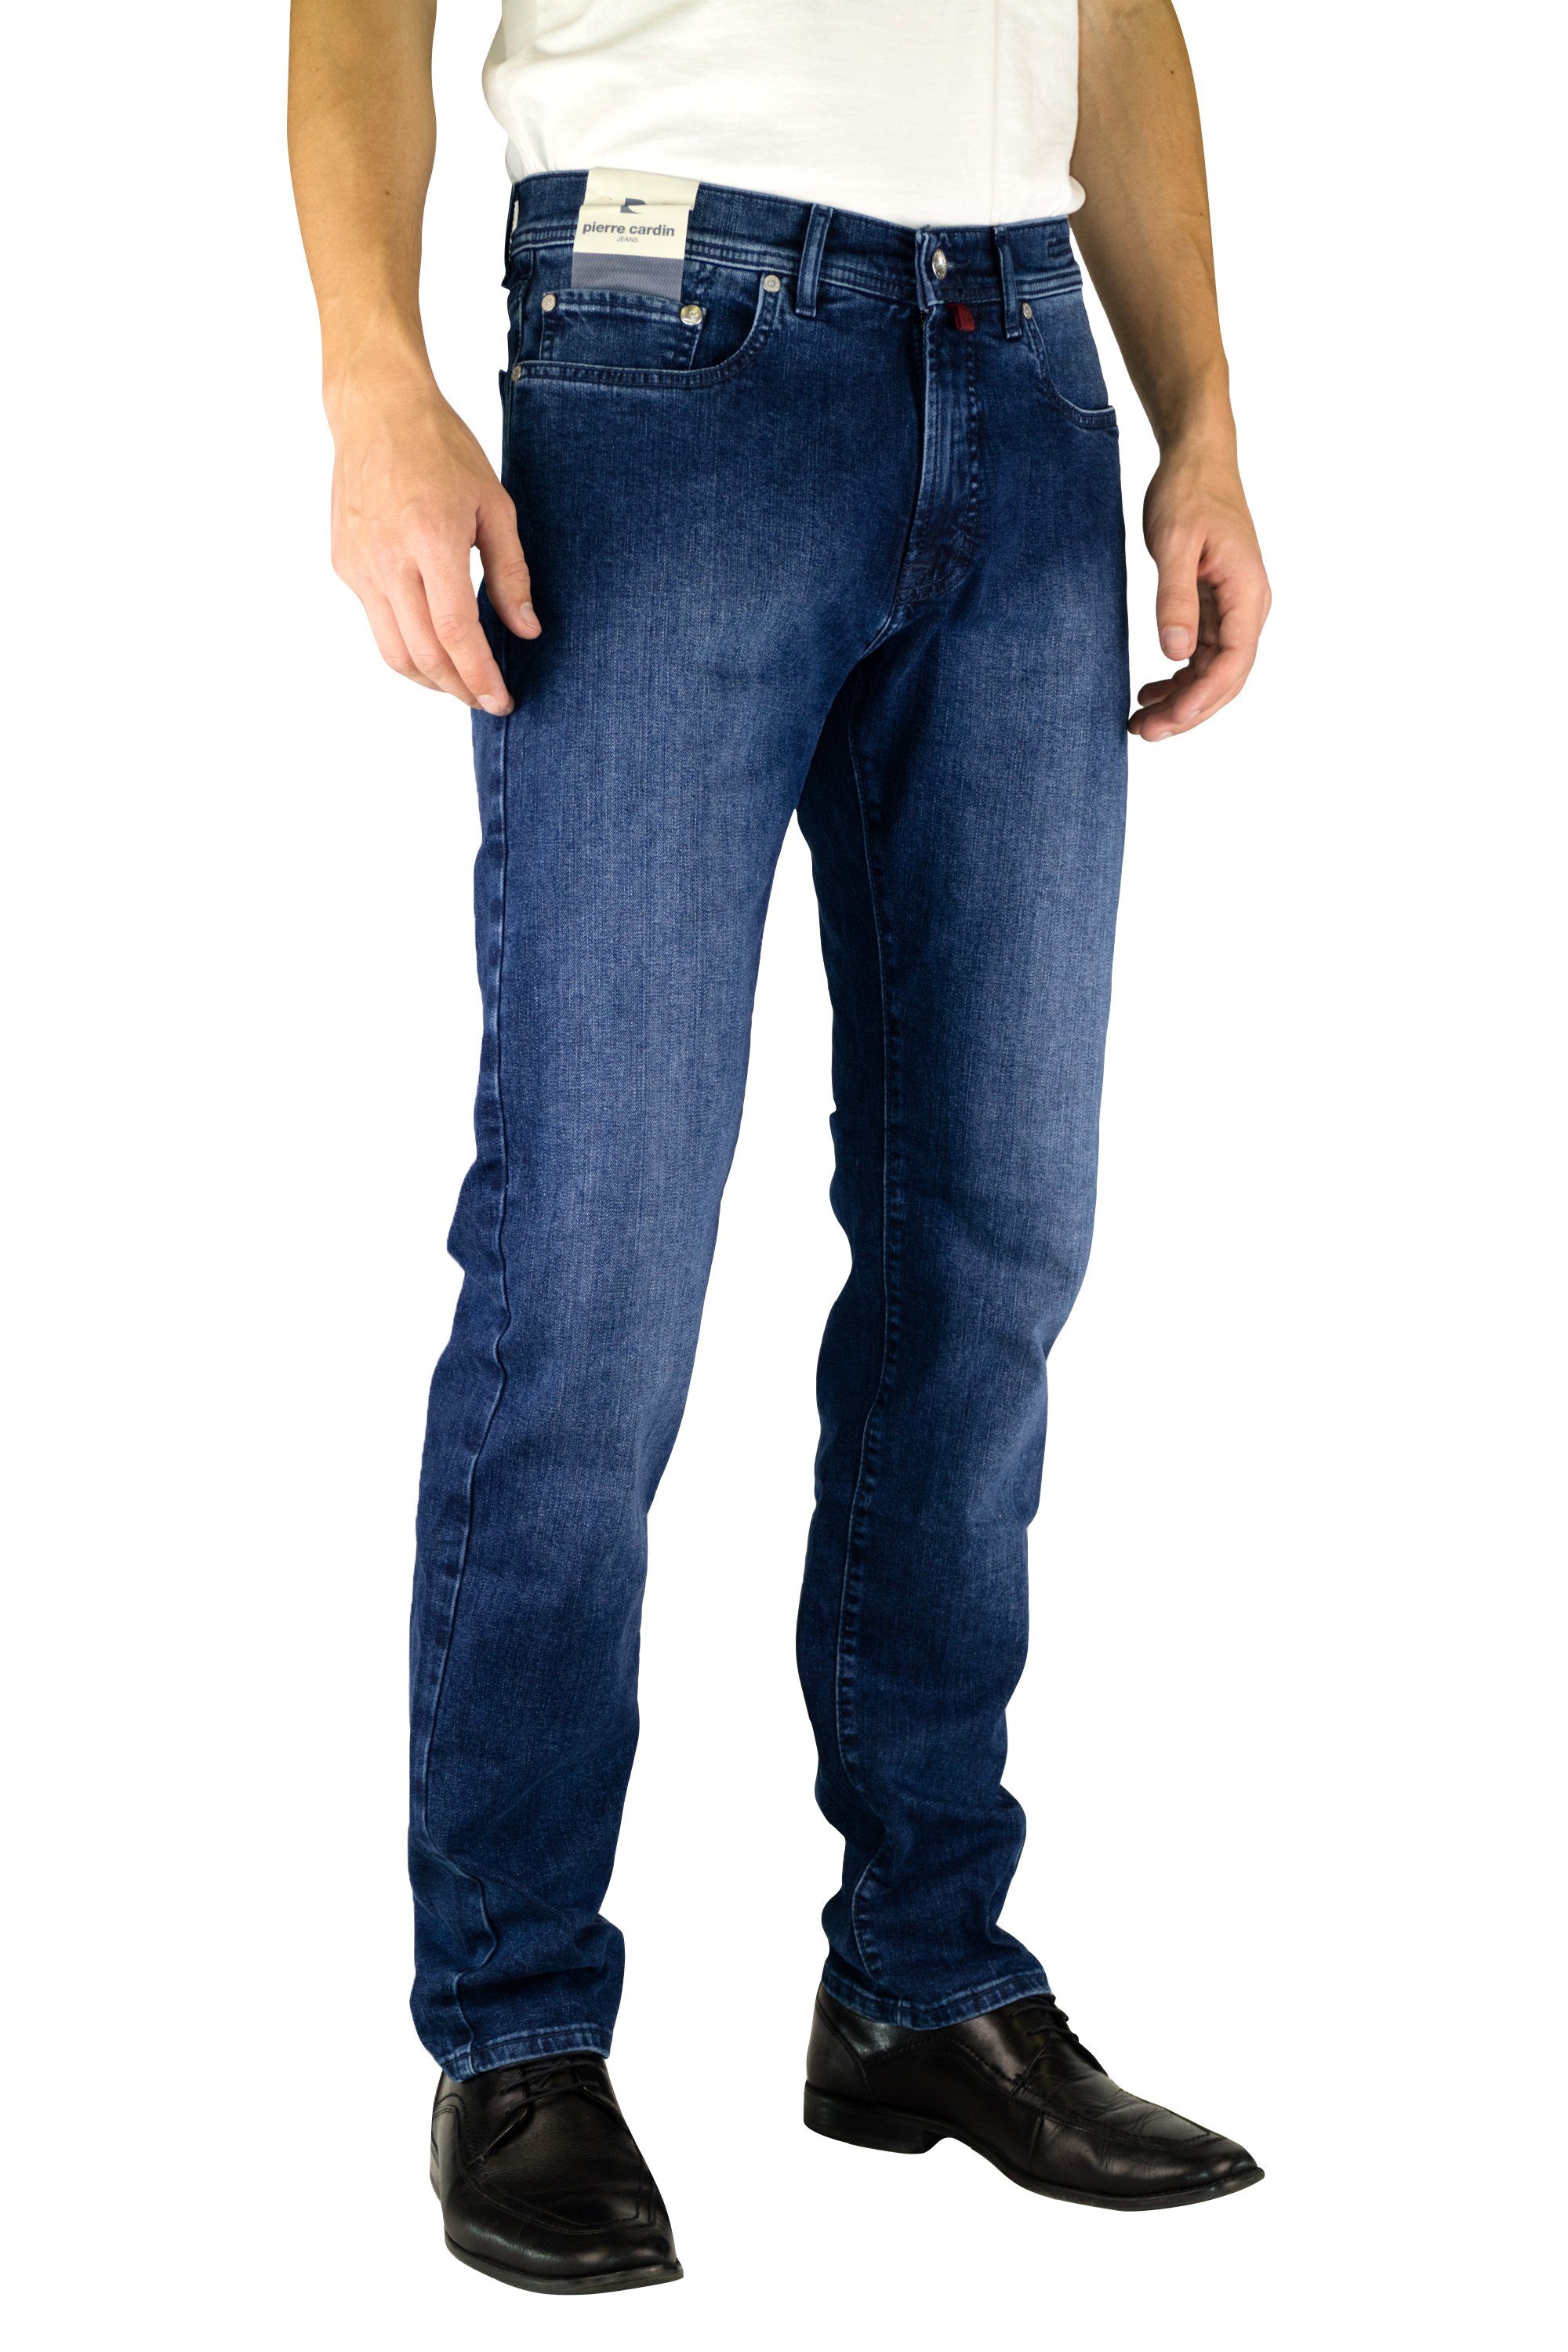 Herren Jeans Pierre Cardin 5-Pocket-Jeans PIERRE CARDIN LYON mid blue light used 3091 912.04